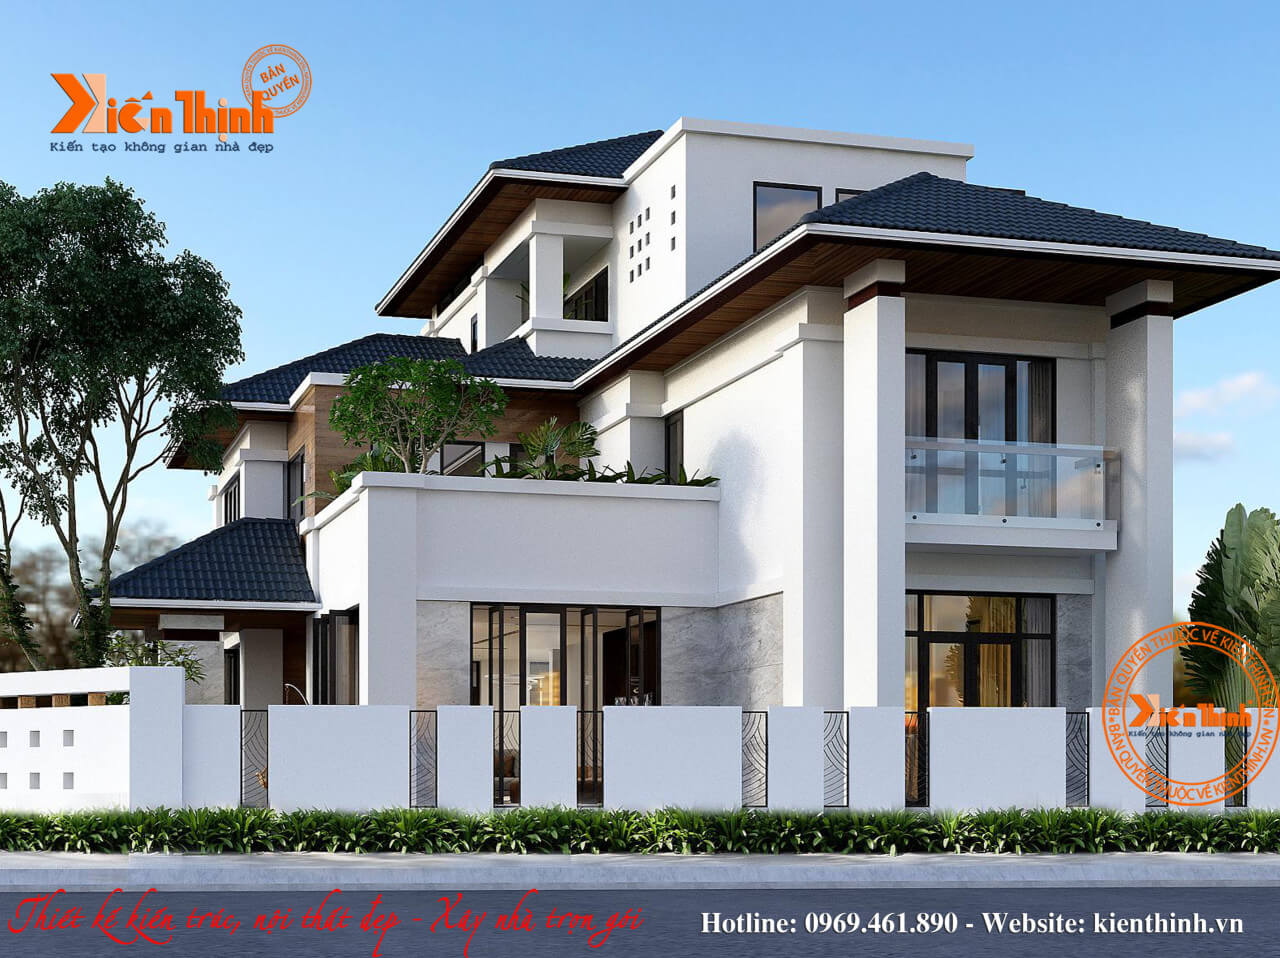 Thiết kế mẫu biệt thự 3 tầng đẹp kiểu hiện đại mái thái tại Thanh Hóa - BT1848